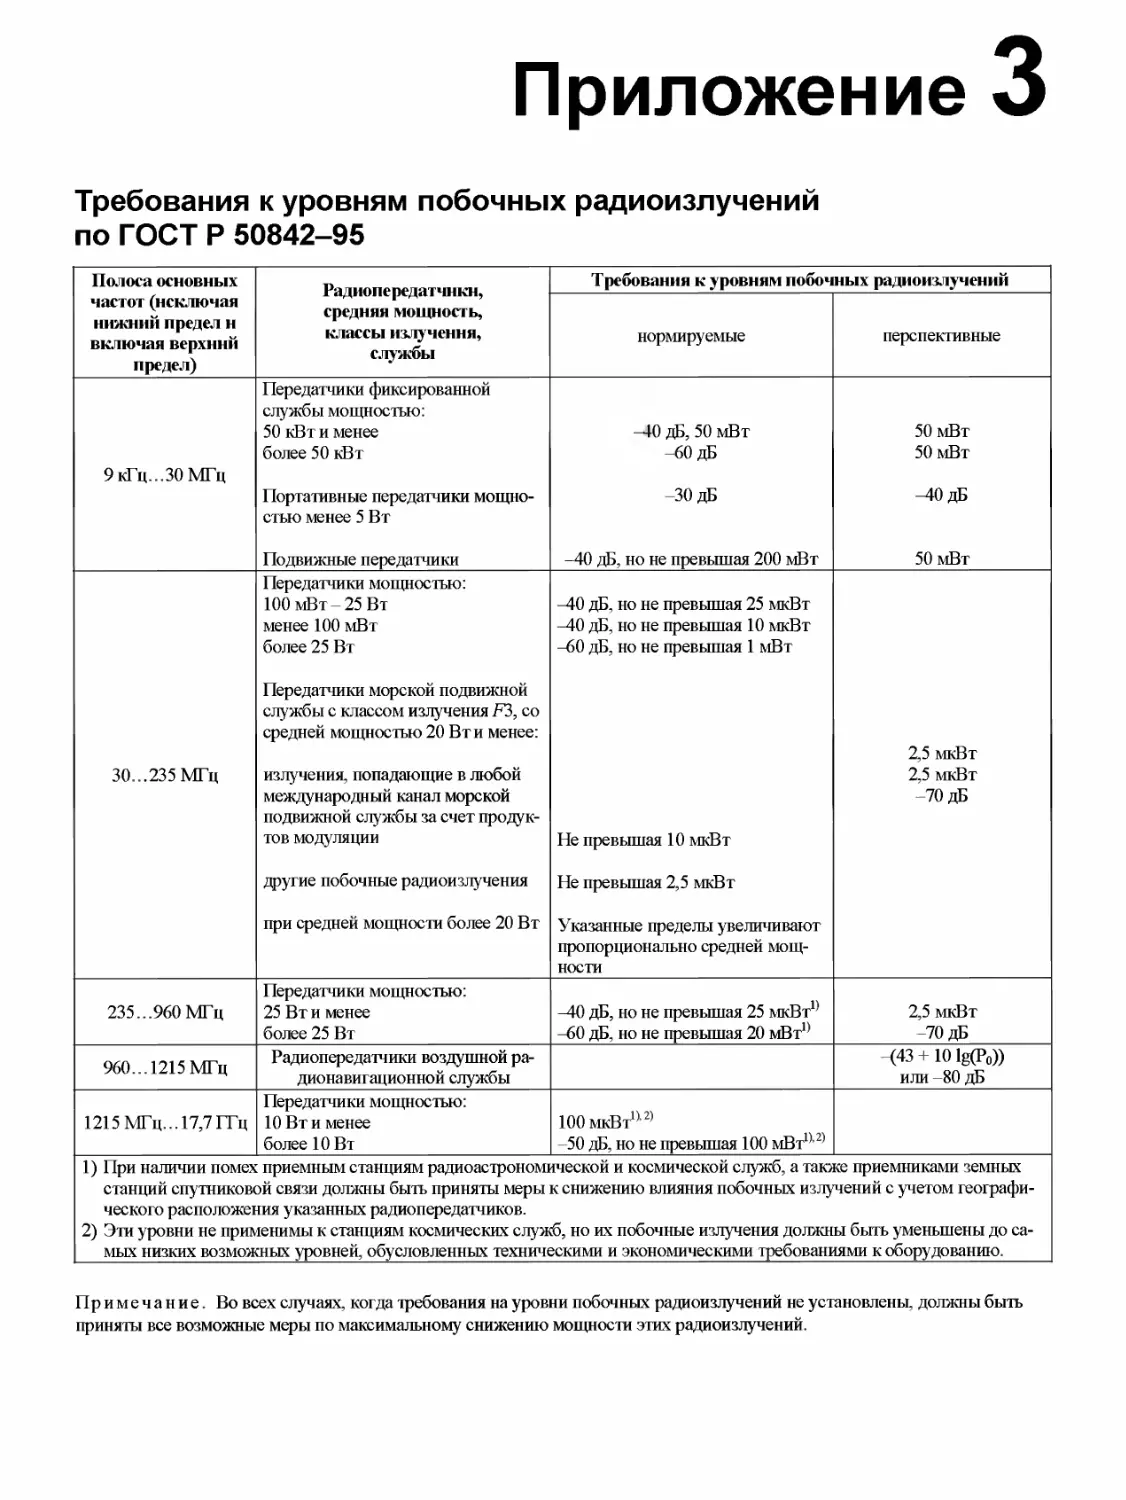 Приложение 3. Требования к уровням побочных радиоизлучений по ГОСТ Р 50842-95